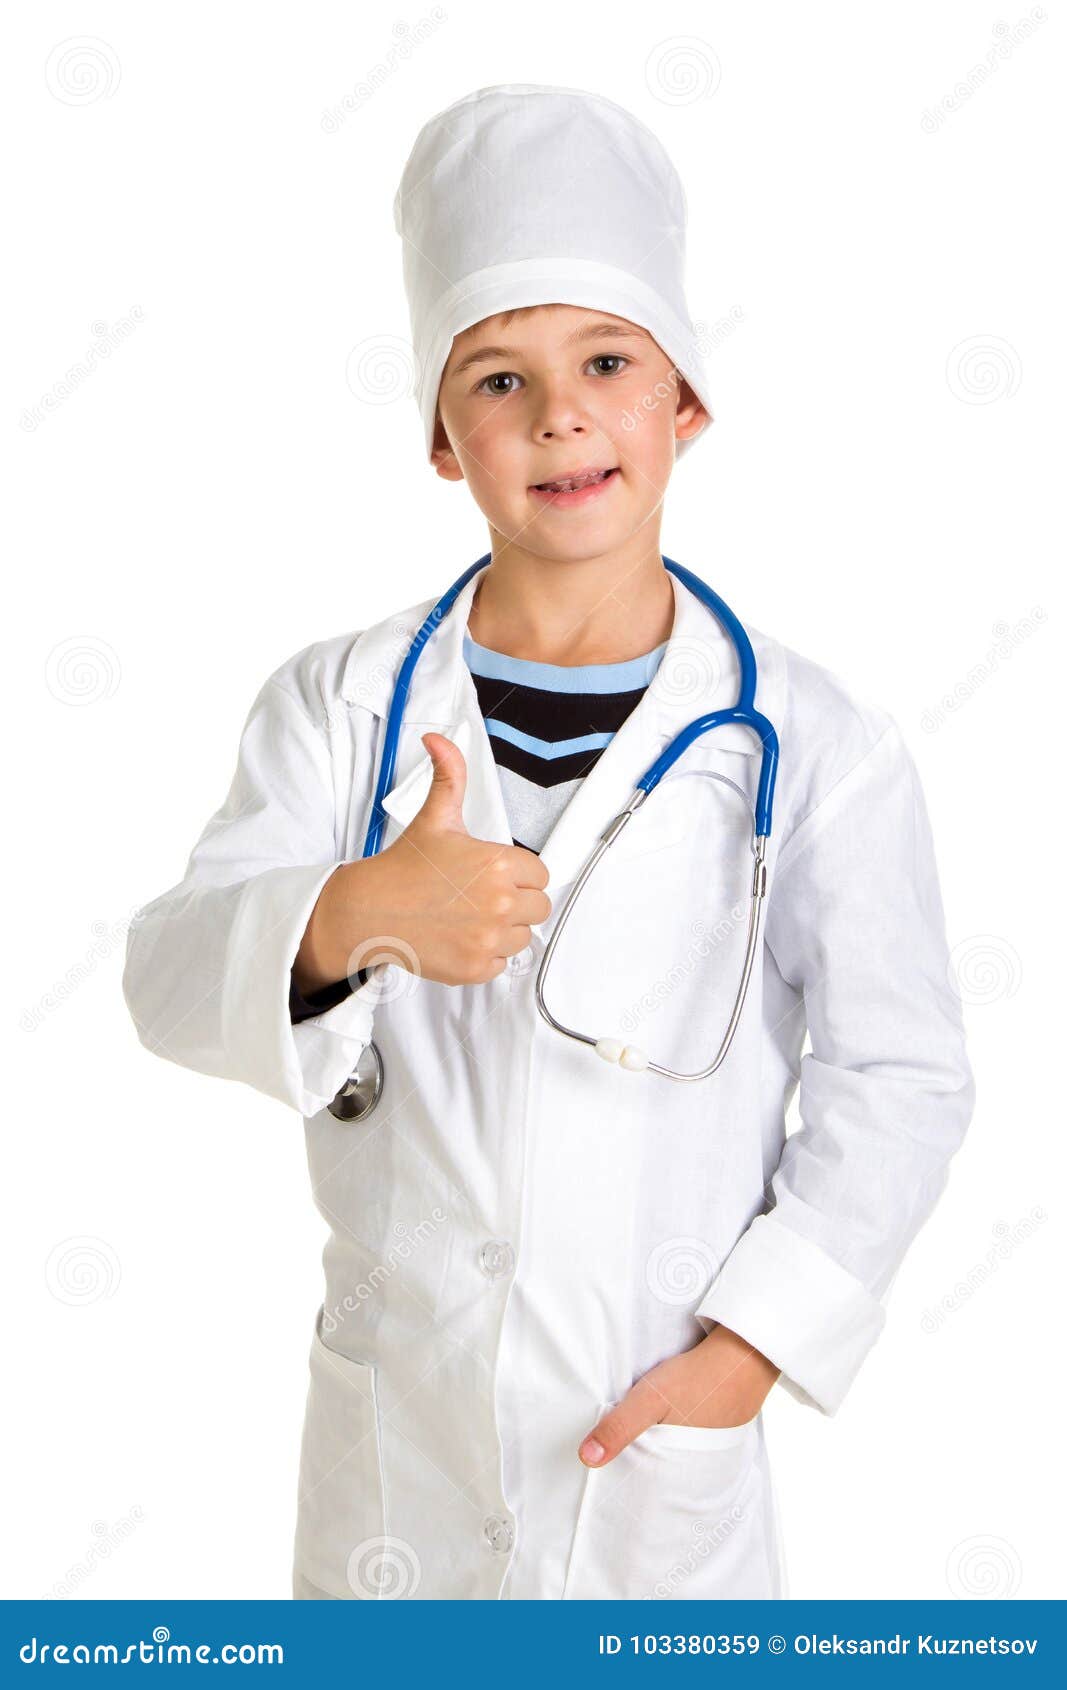 После обхода врач. Быть доктором это. Девочка хочет быть доктором. Мое призвание врач.